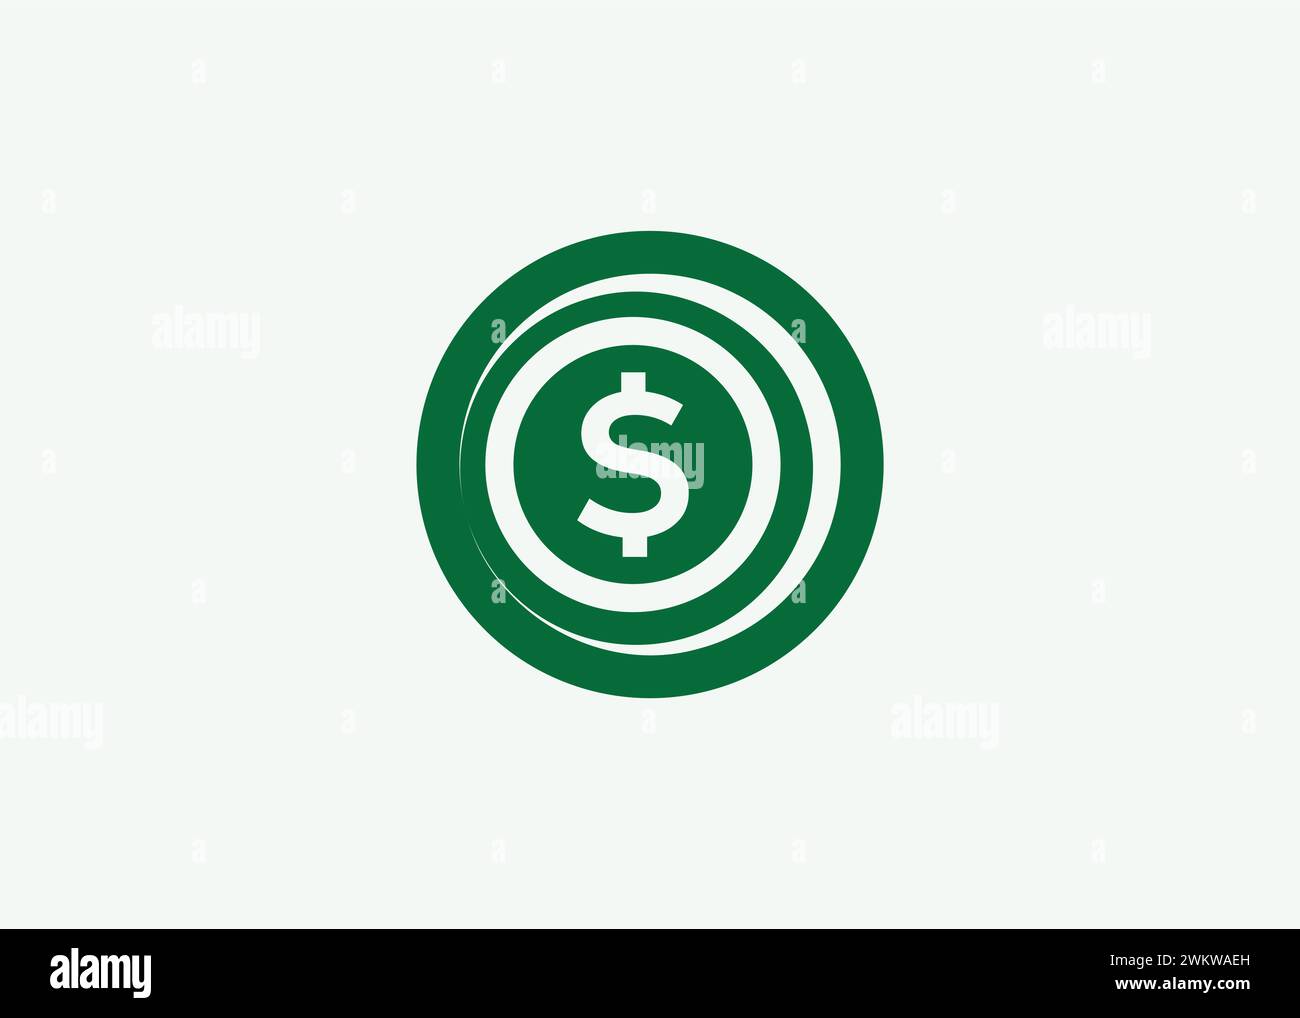 Minimalistische Dollar Coin Logo Design Vektorvorlage. Münze für Business Finance Vektor. Münze mit Finanzwährung Stock Vektor